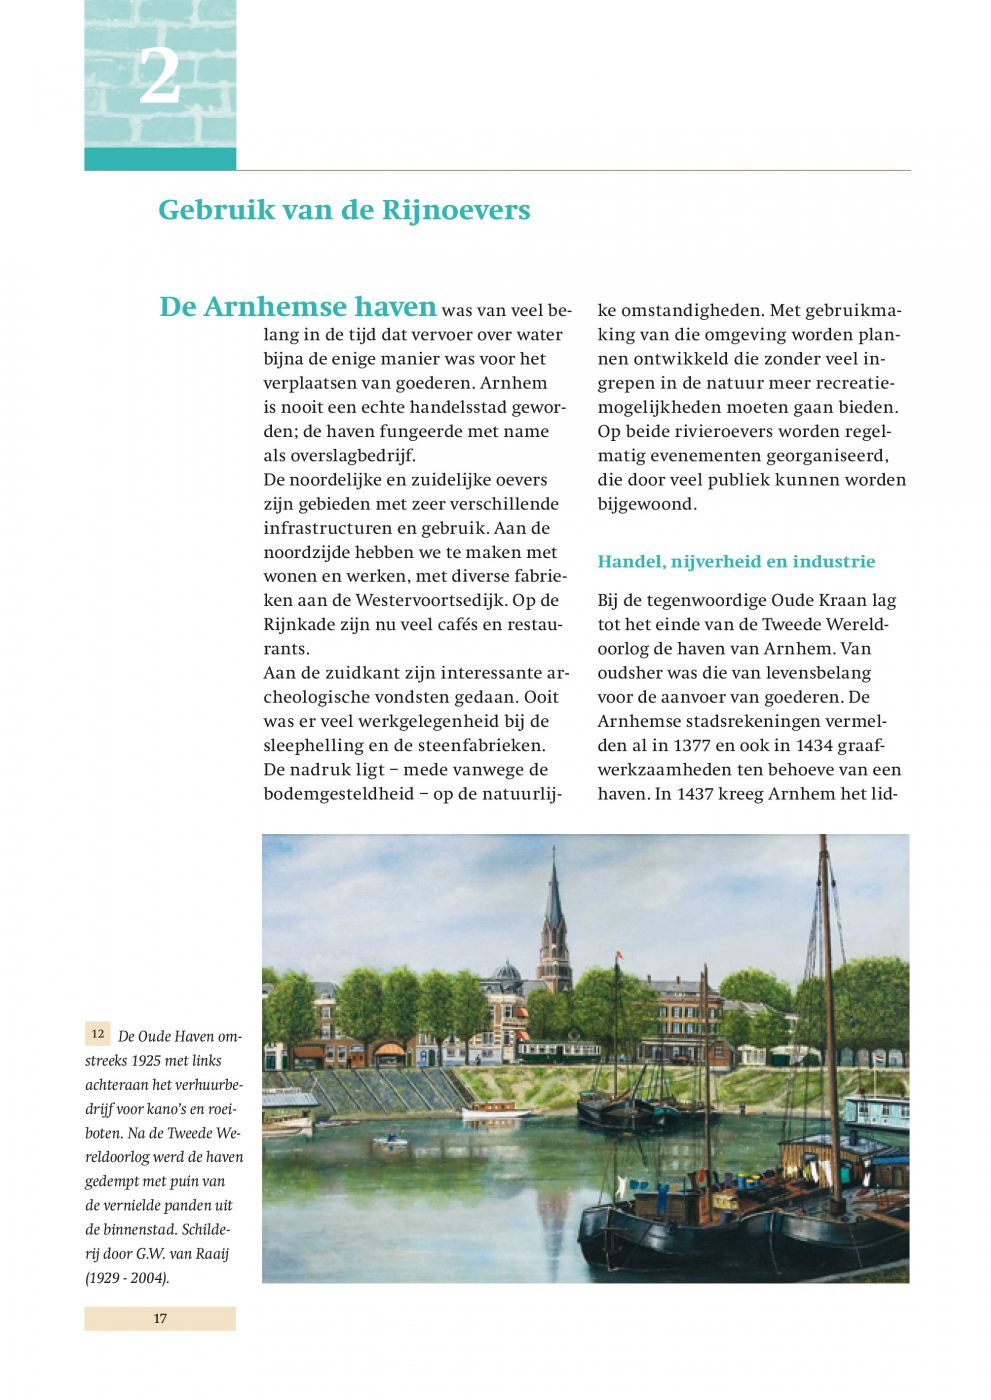 Inkijkexemplaar van het boek: <em>De Arnhemse Rijnoevers.  Wonen, werken en recreatie aan de rivier</em> - © Uitgeverij Matrijs